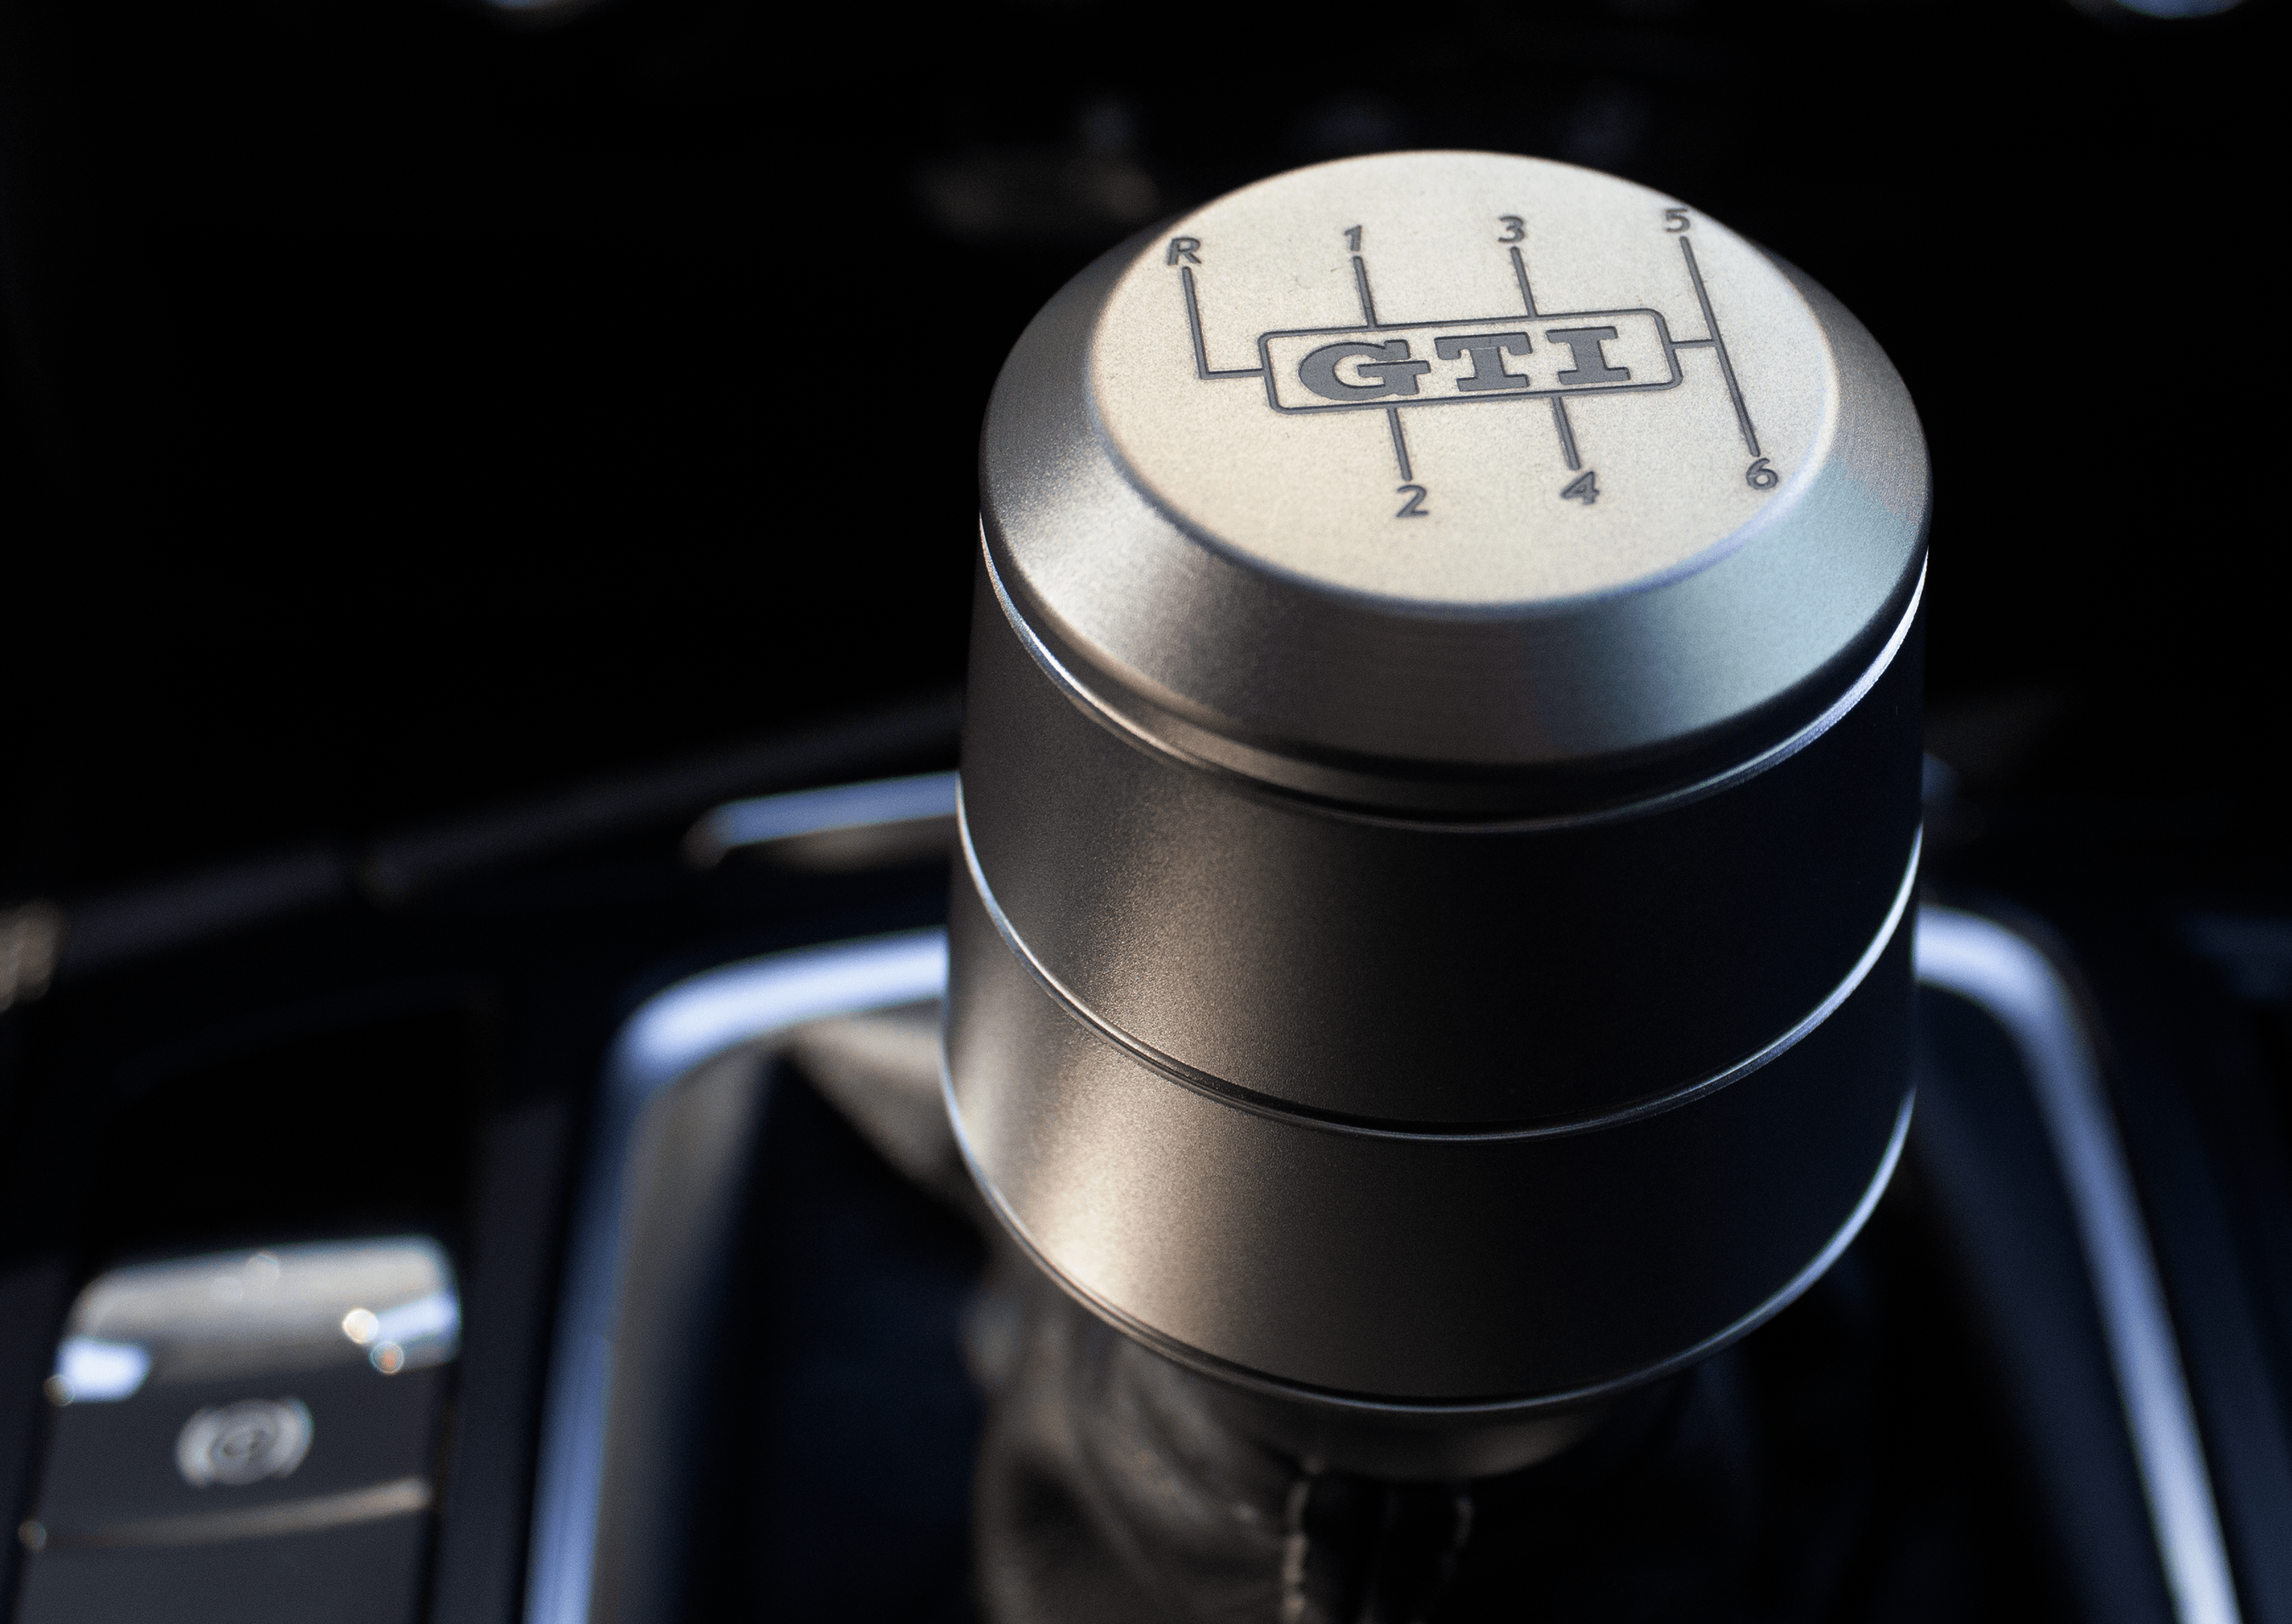 V2 Shift Knob - Manual Audi/VW